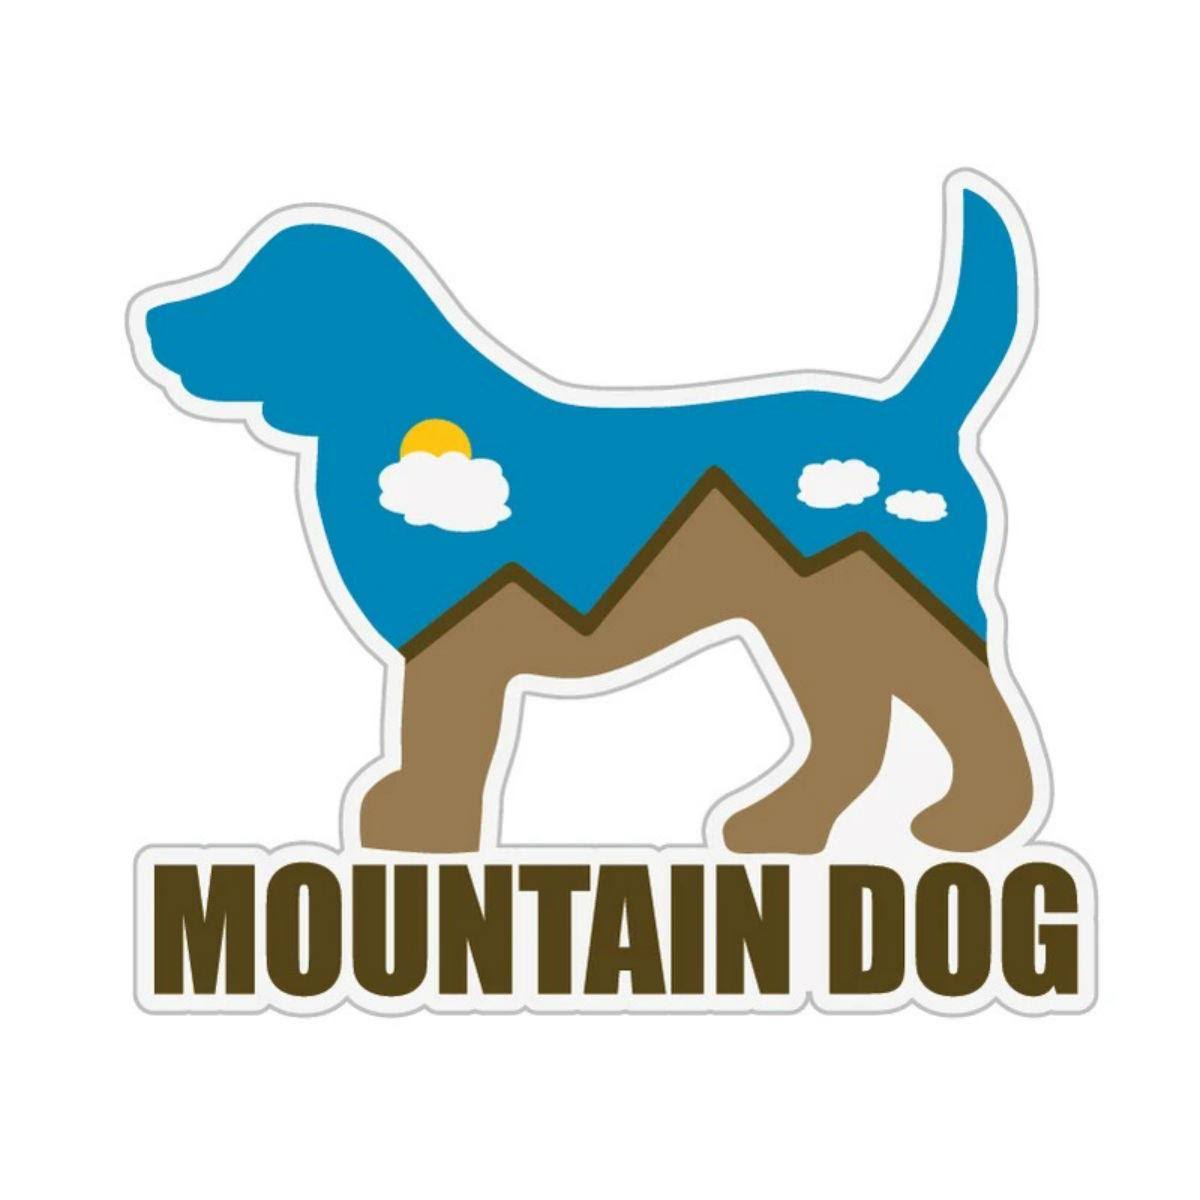 Mountain Dog Sticker by Dog Speak - 3" Sticker